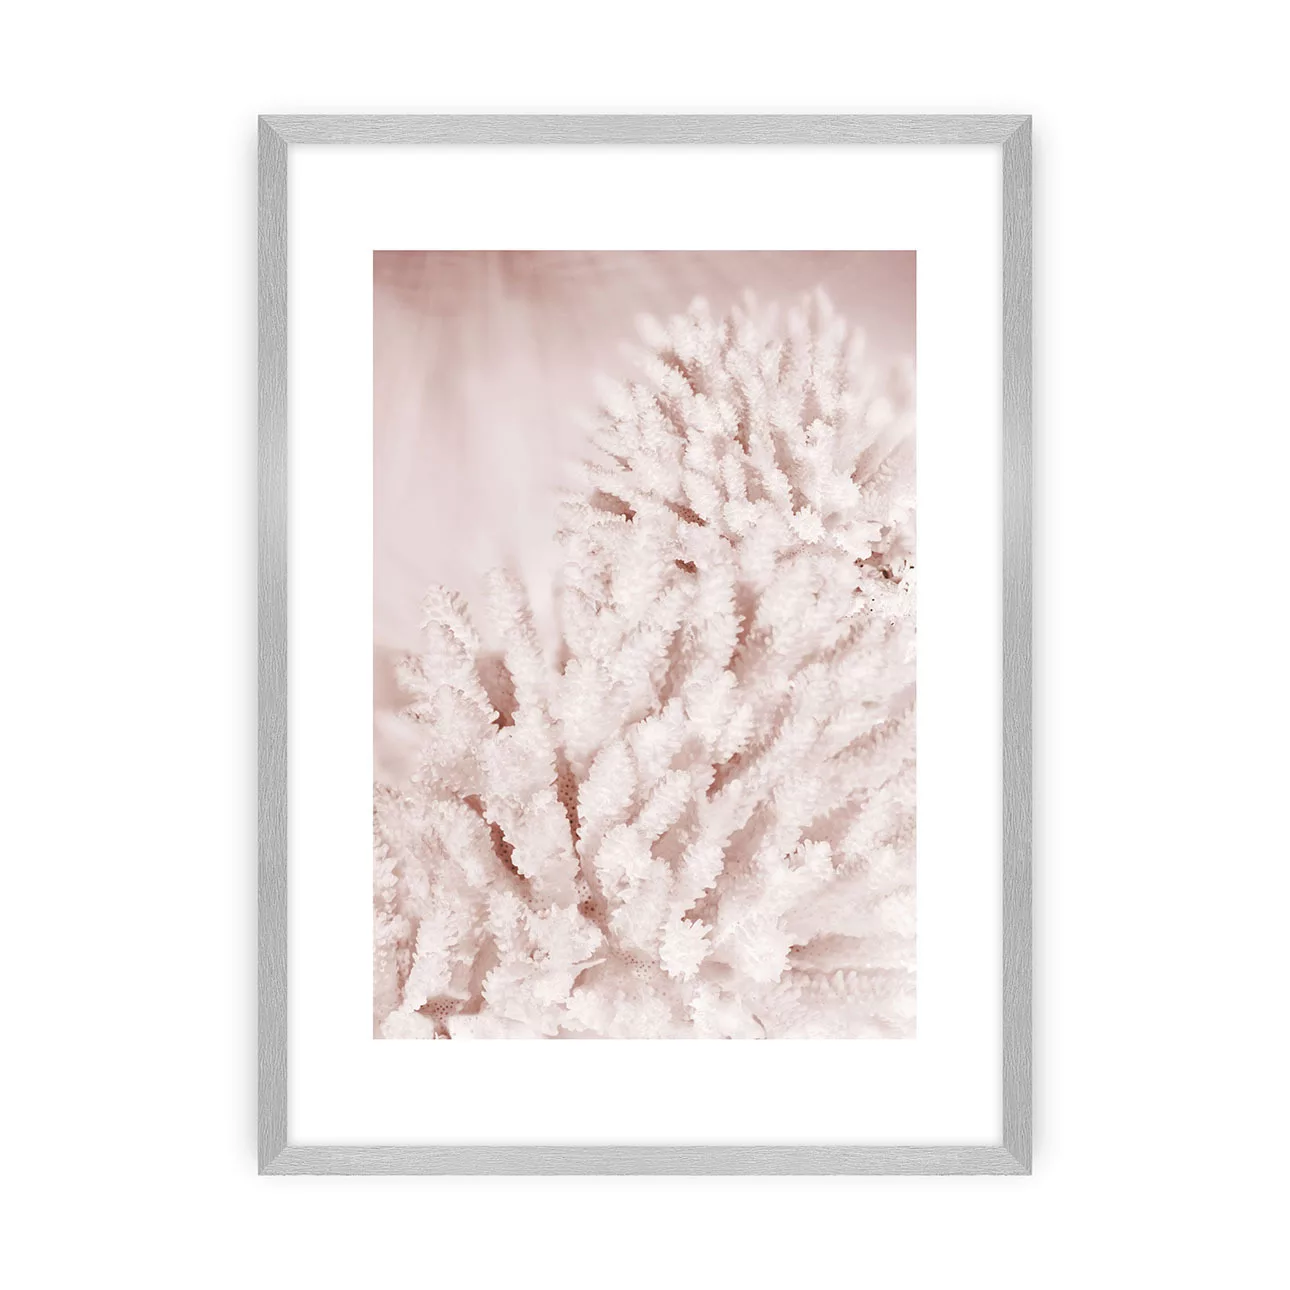 Poster Pastel Pink II, 40 x 50 cm, Rahmen wählen: silberner Rahmen günstig online kaufen